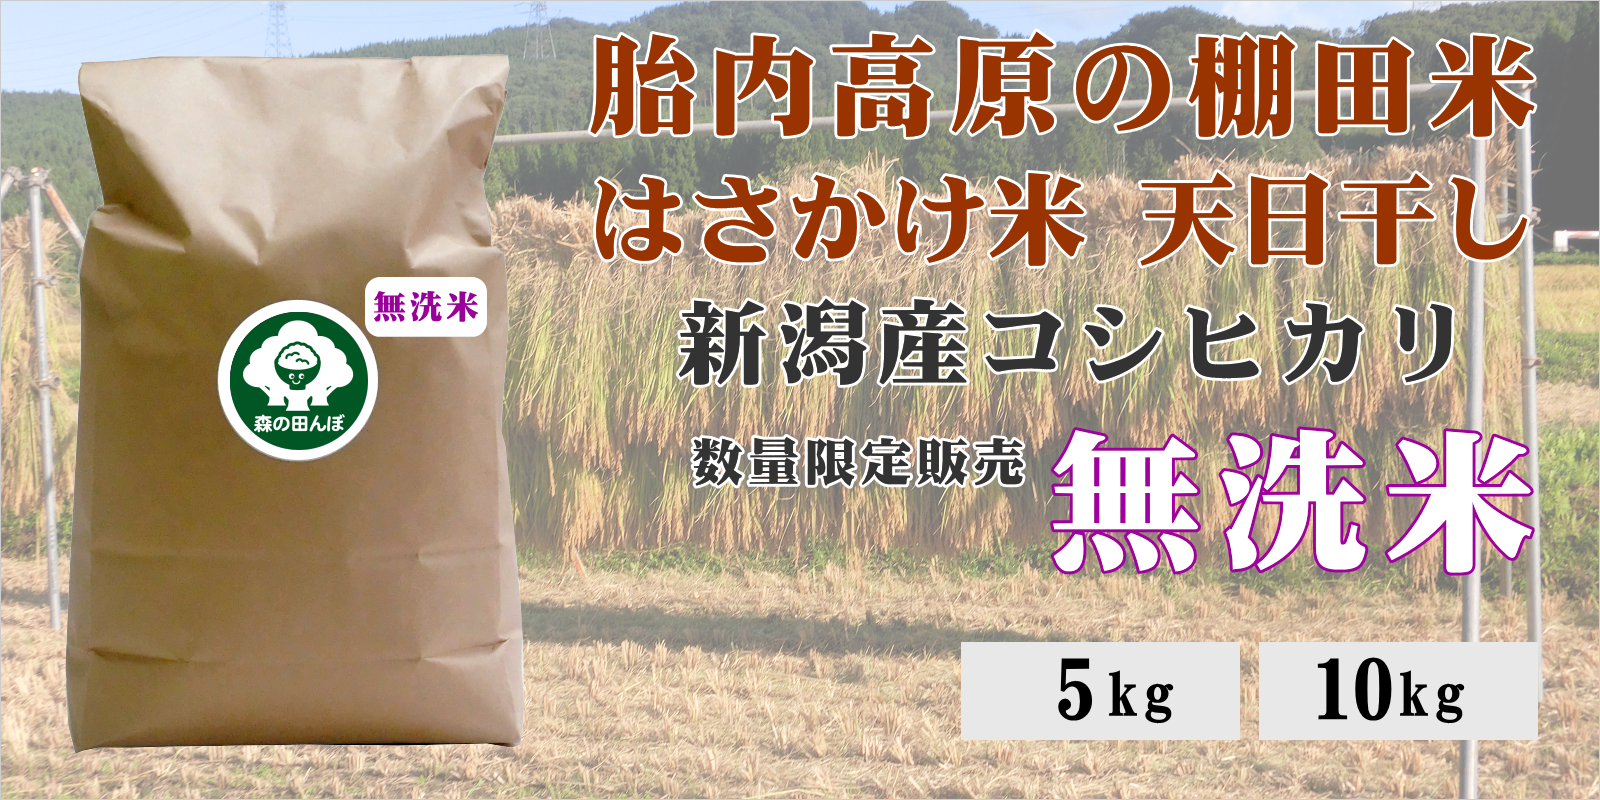 胎内高原の棚田米 はさかけ米 天日干し 新潟産コシヒカリ 限定販売 無洗米